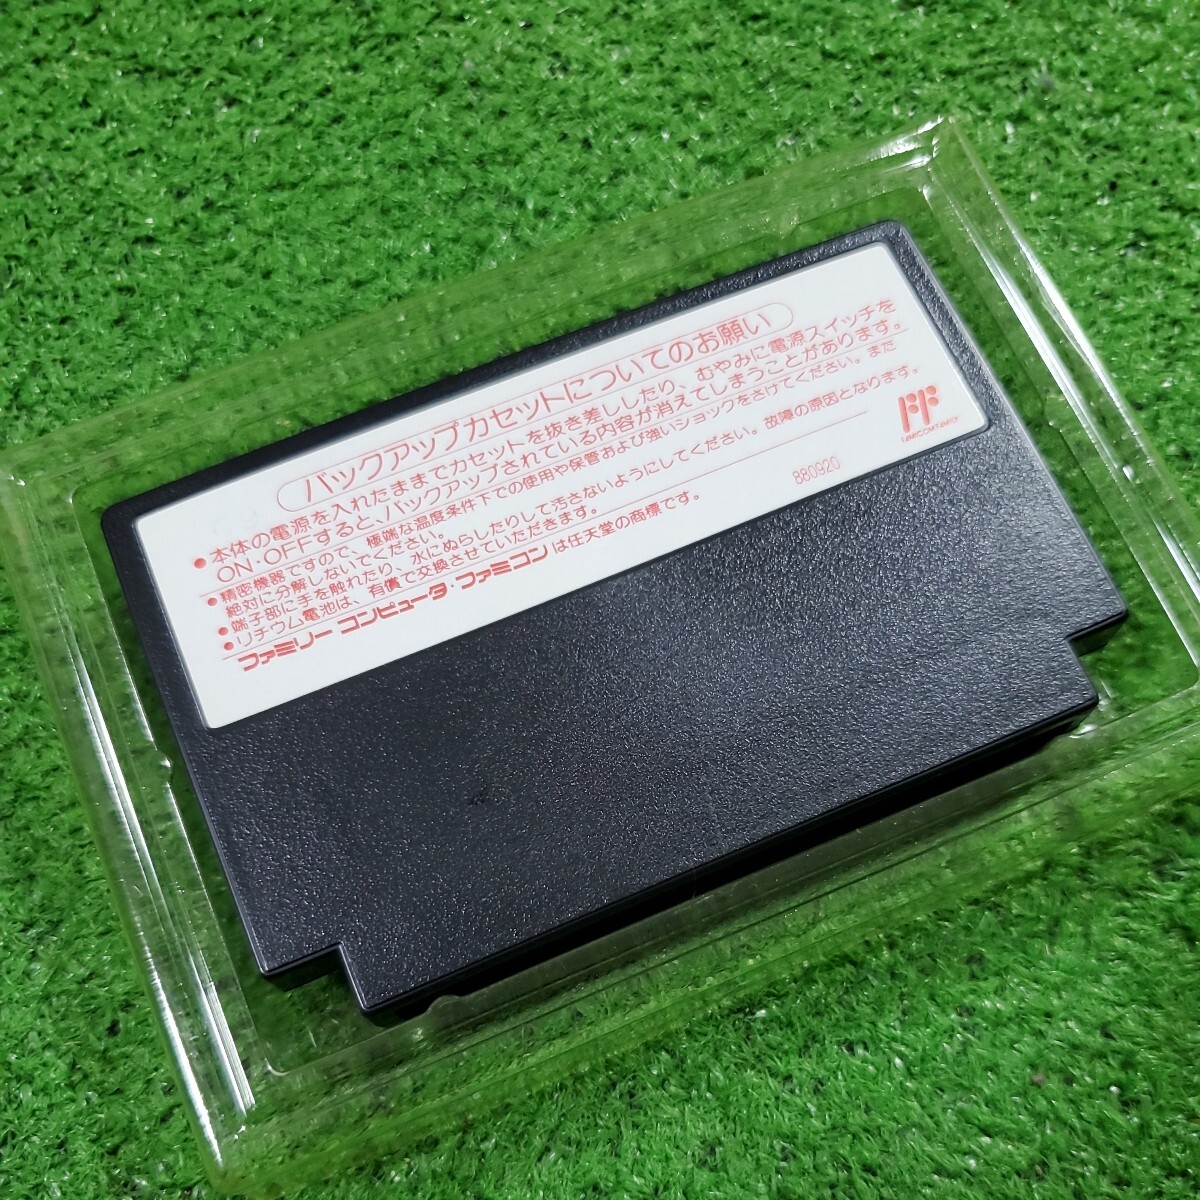 FC Famicom кассета soft Го введение рабочее состояние подтверждено коробка мнение есть коробка инструкция редкий товар Family компьютер стоимость доставки 230 иен 